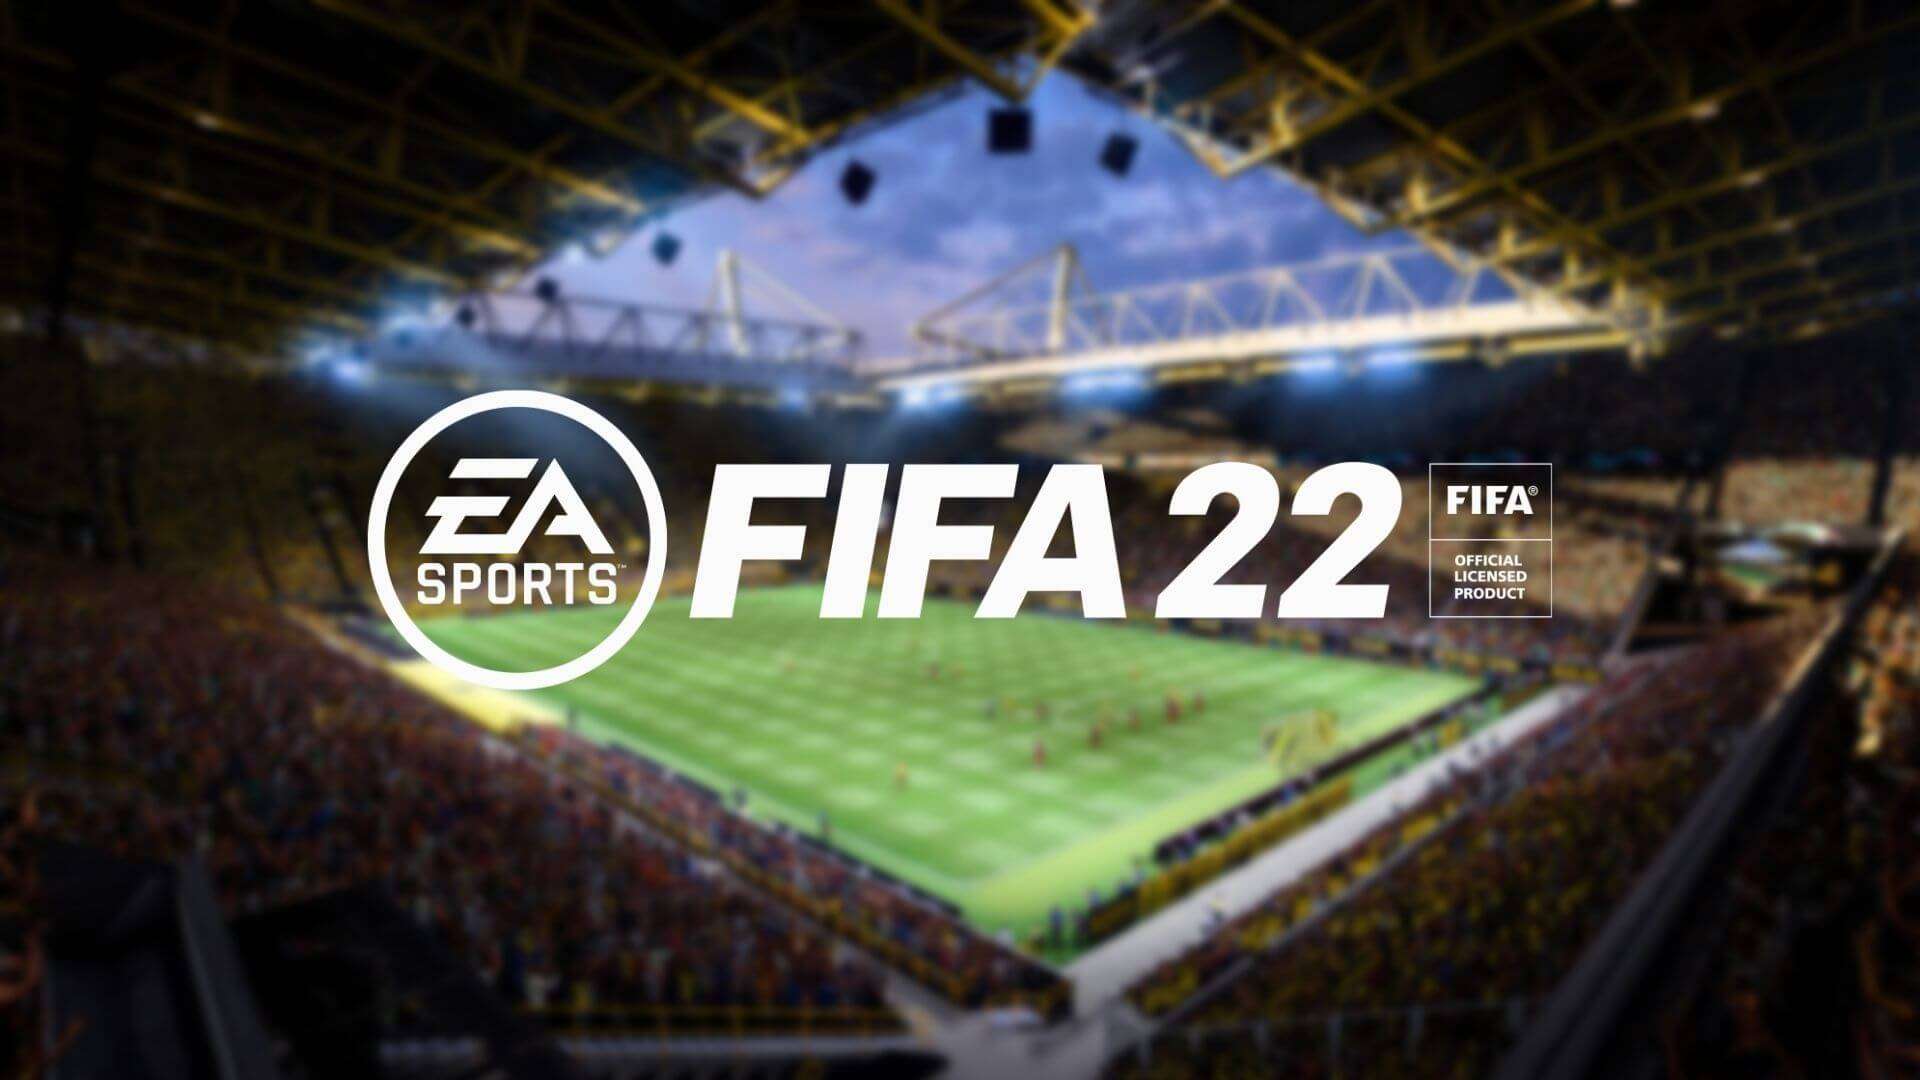 fifa 22 logo on stadium